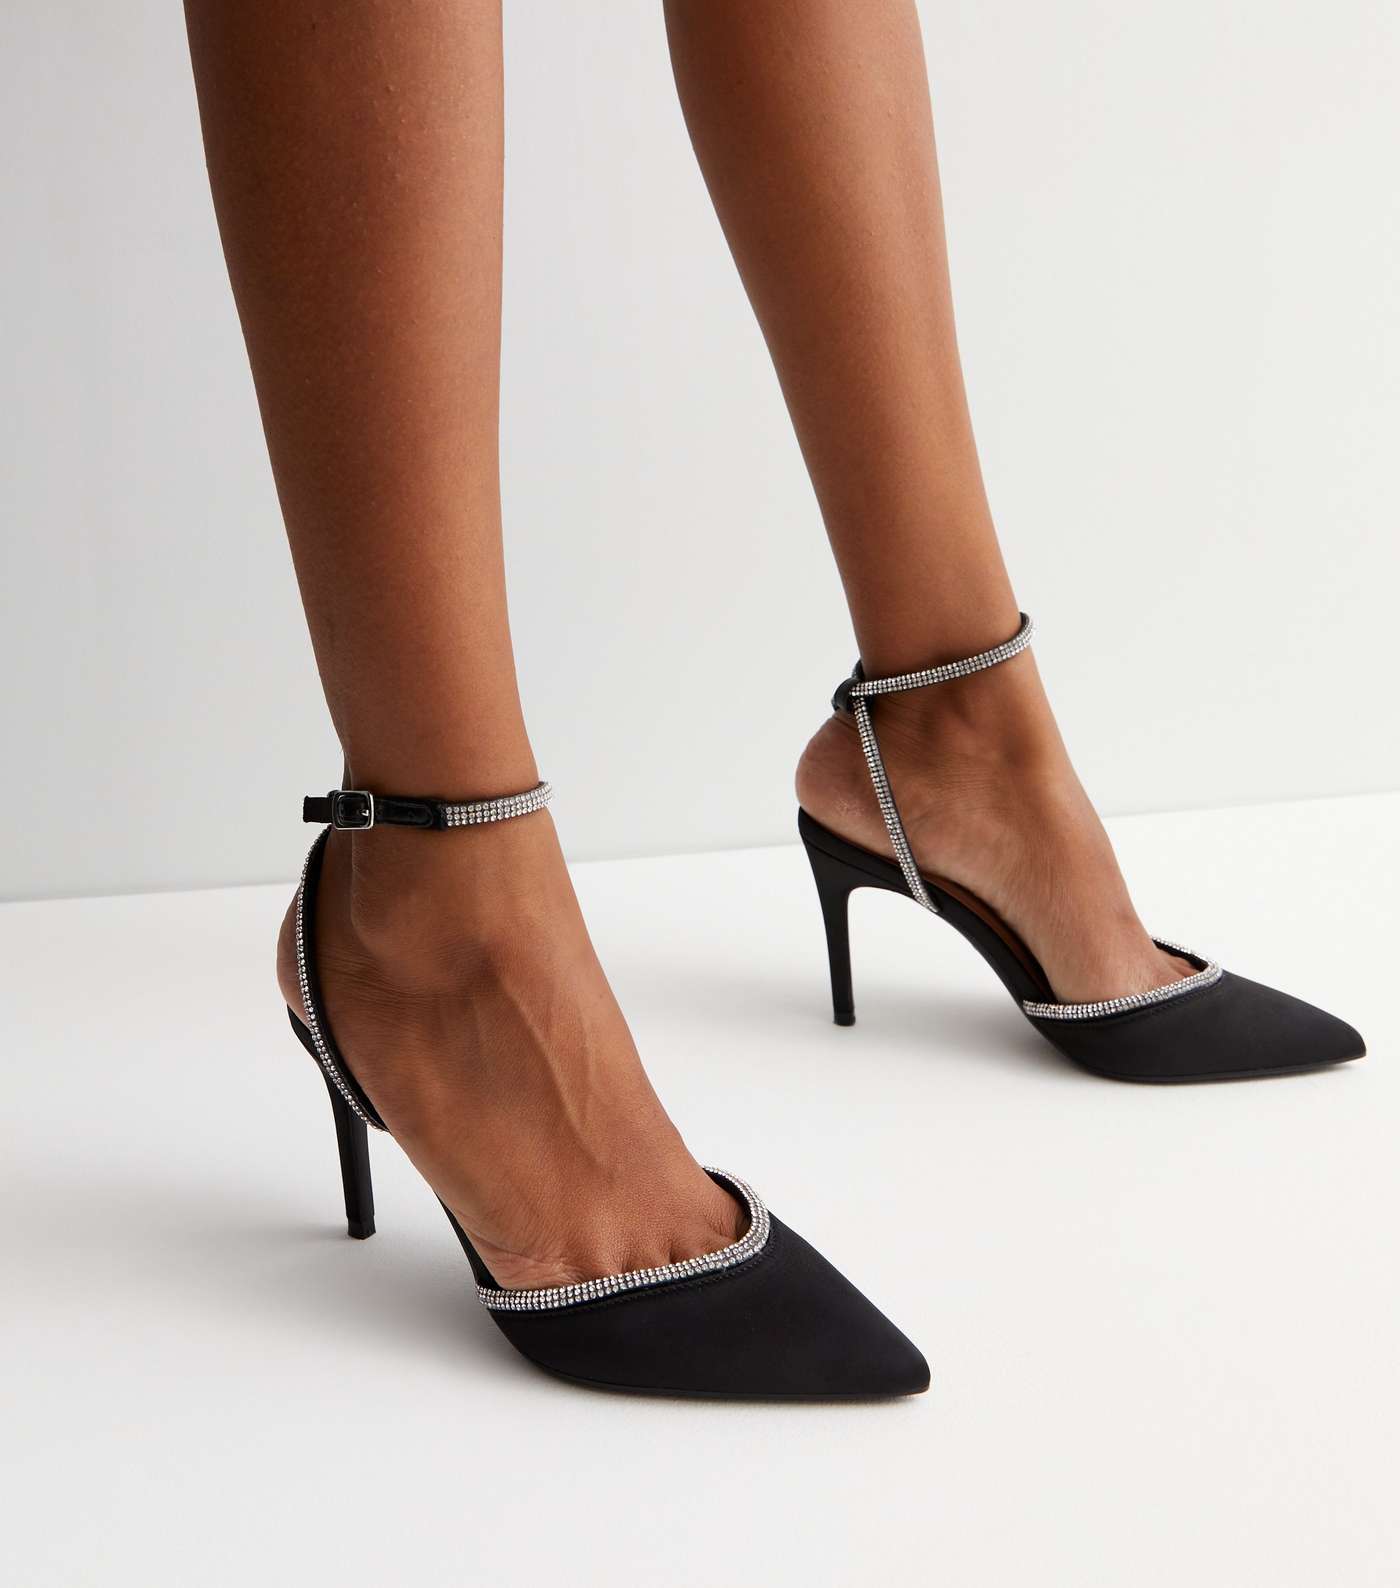 Black Satin Diamanté Trim 2 Part Stiletto Heel Sandals Image 2